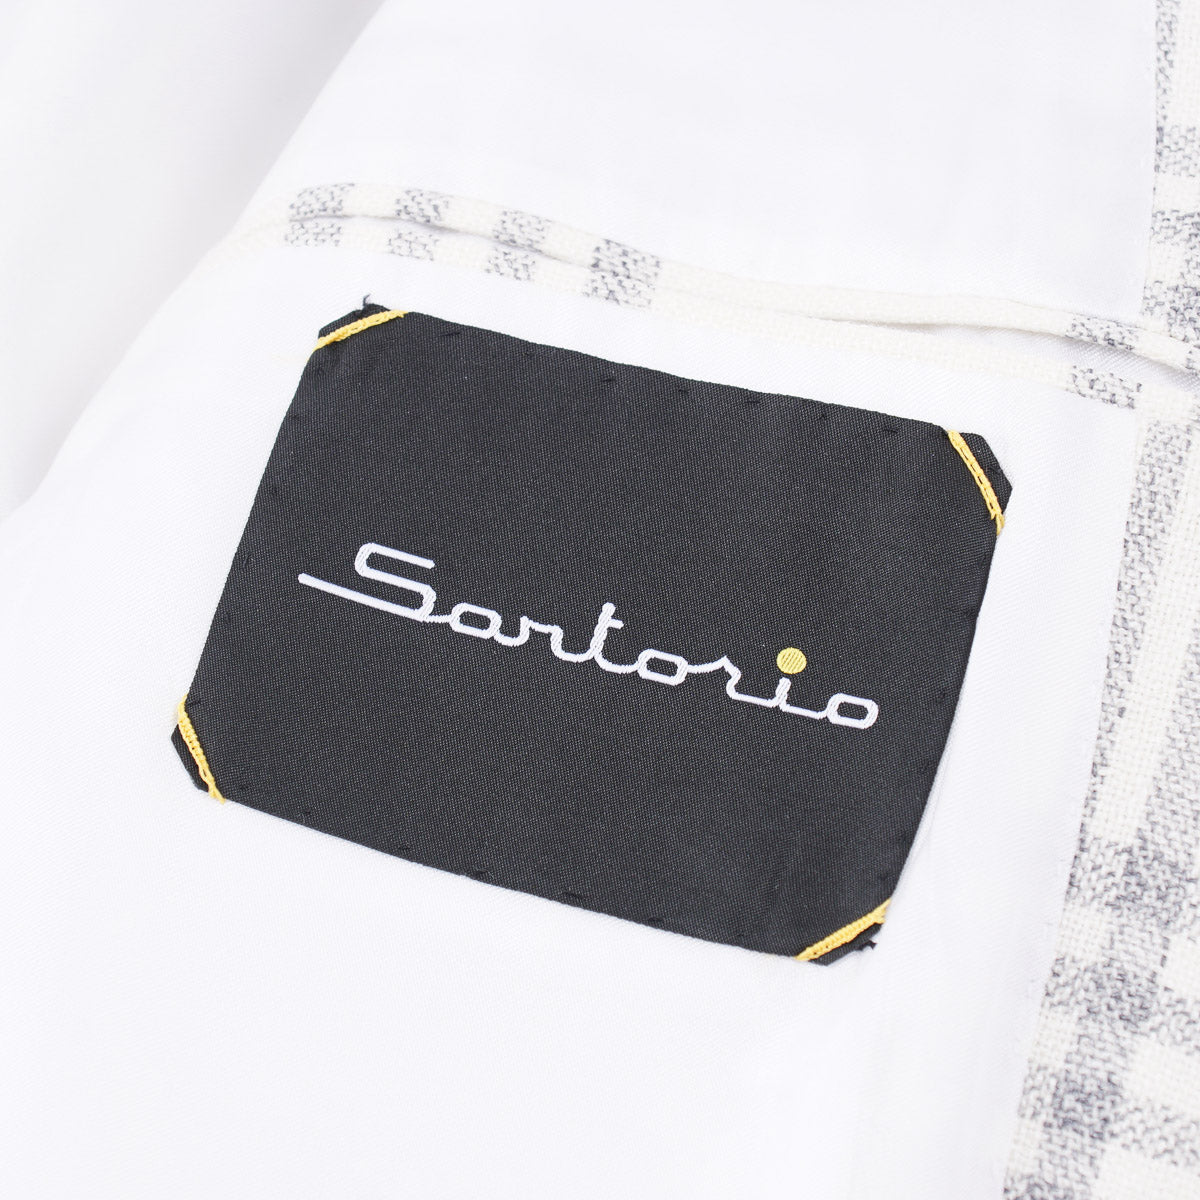 Sartorio Mid-Weight Wool and Linen Overcoat - Top Shelf Apparel